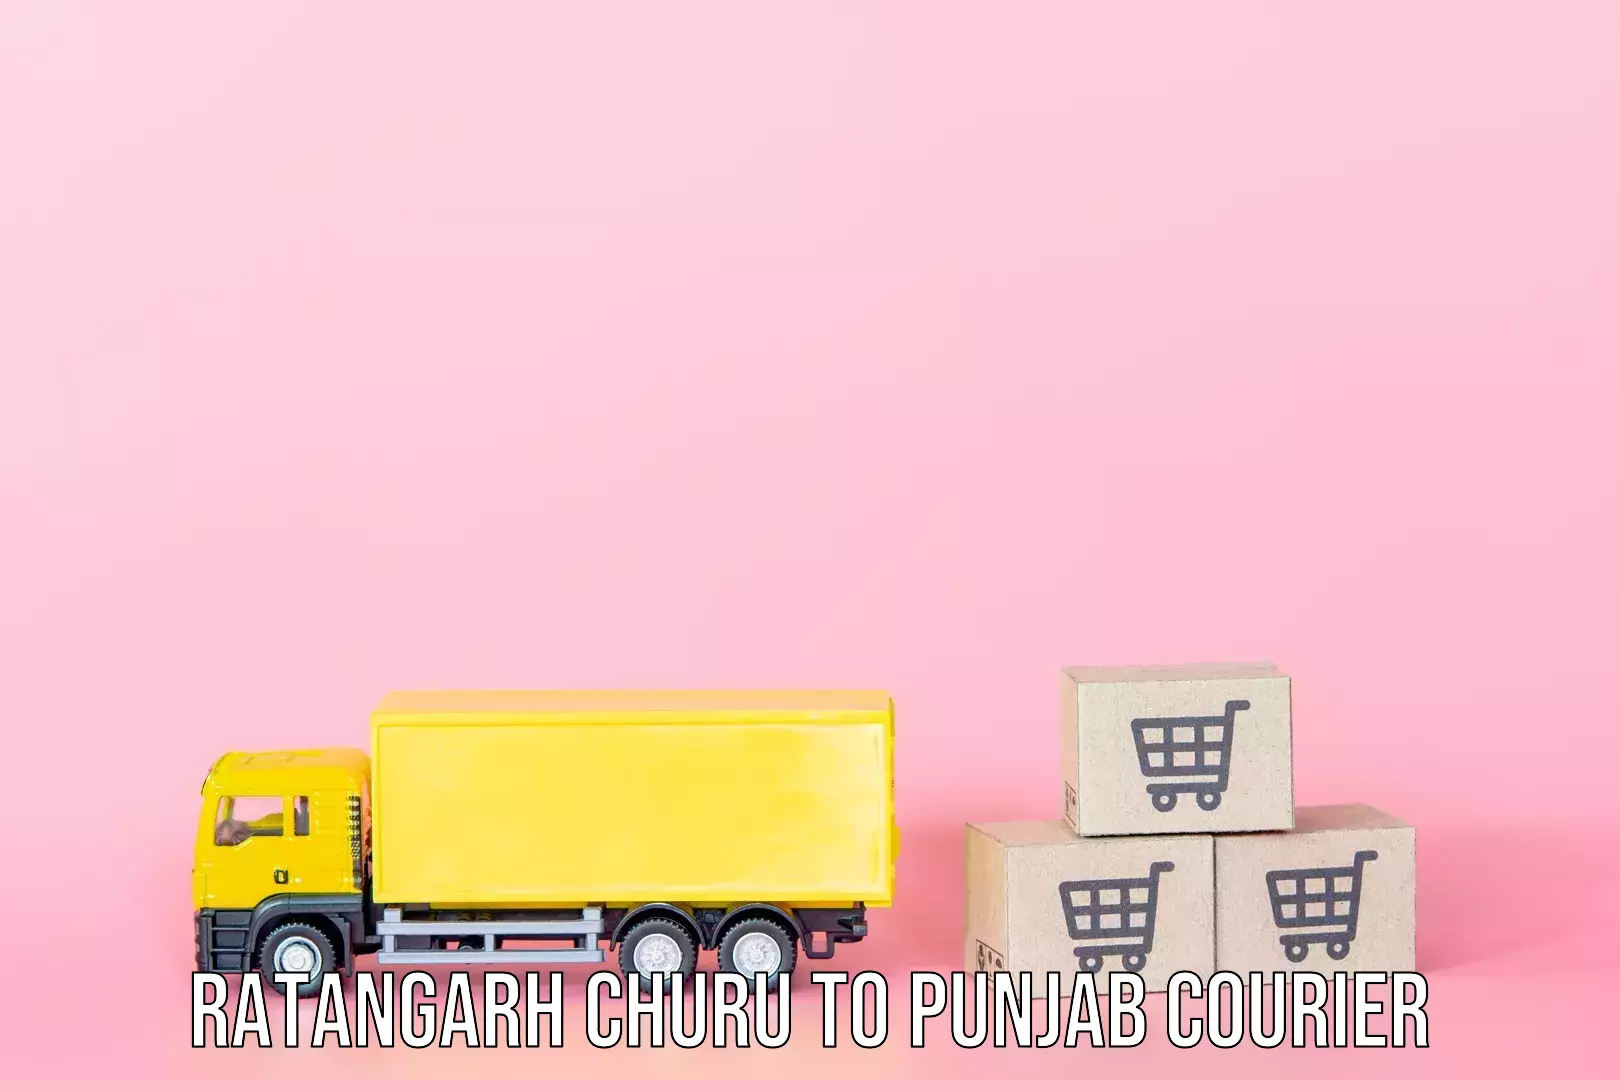 Baggage shipping service Ratangarh Churu to Dhilwan